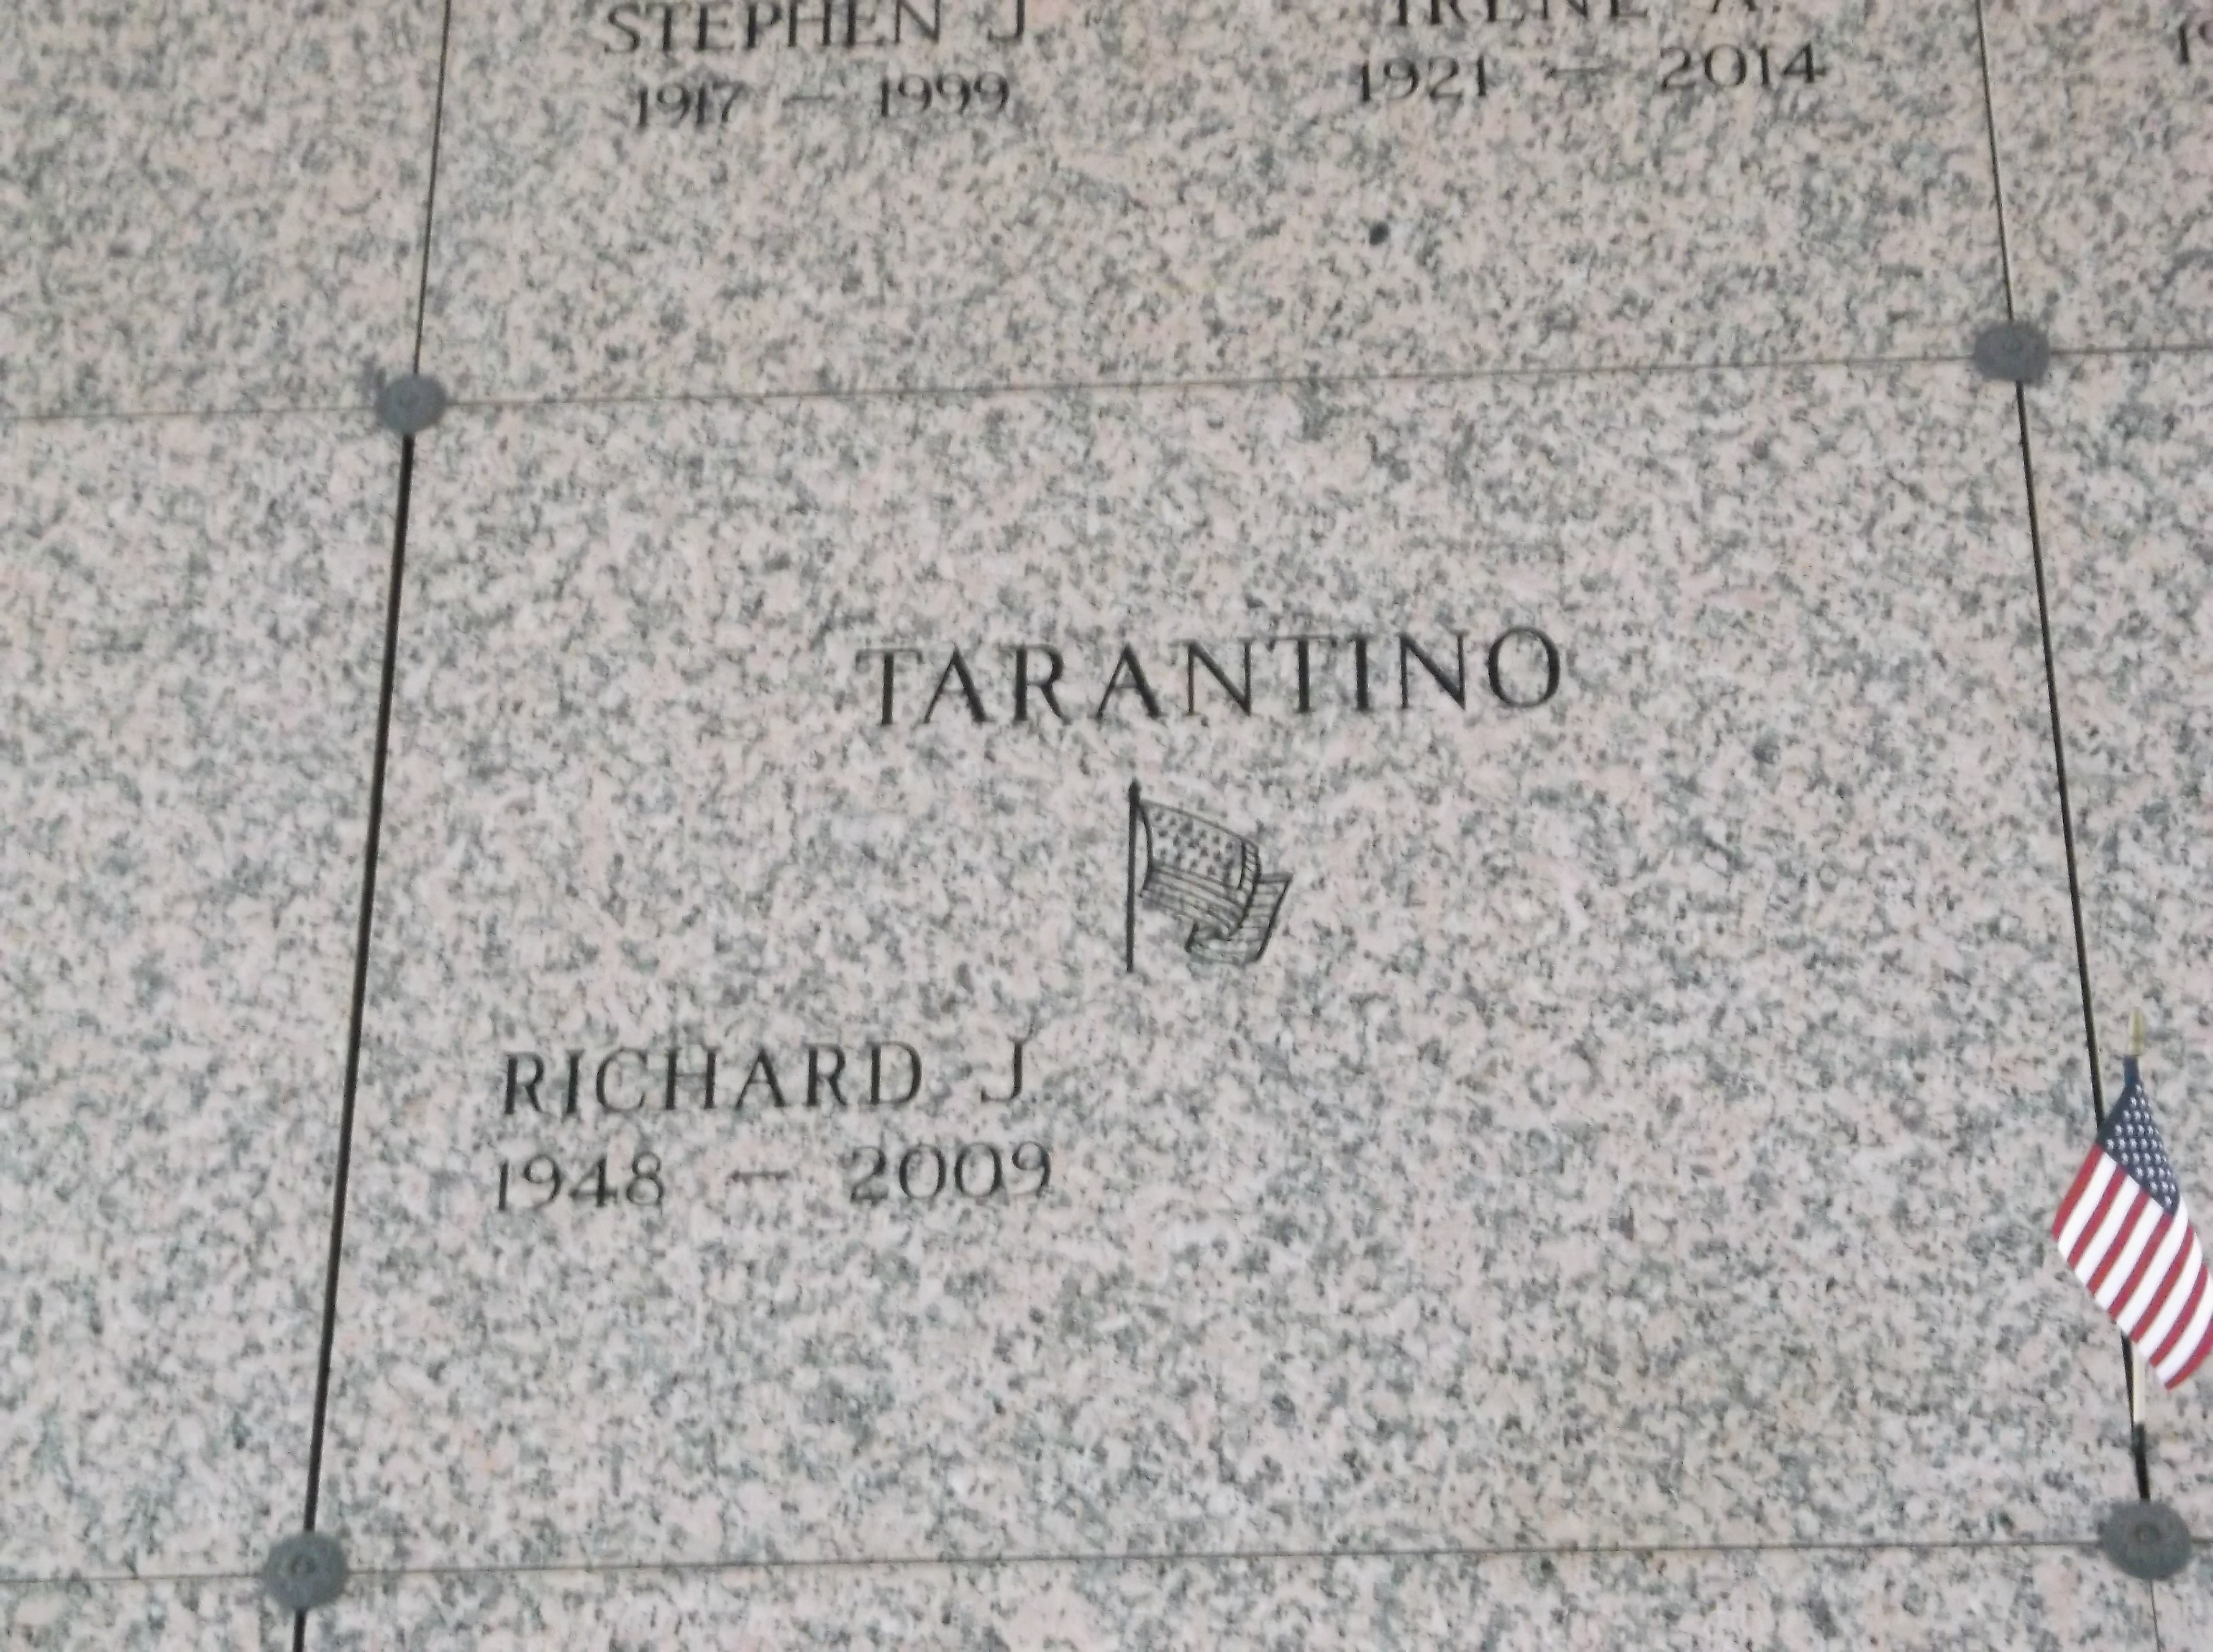 Richard J Tarantino